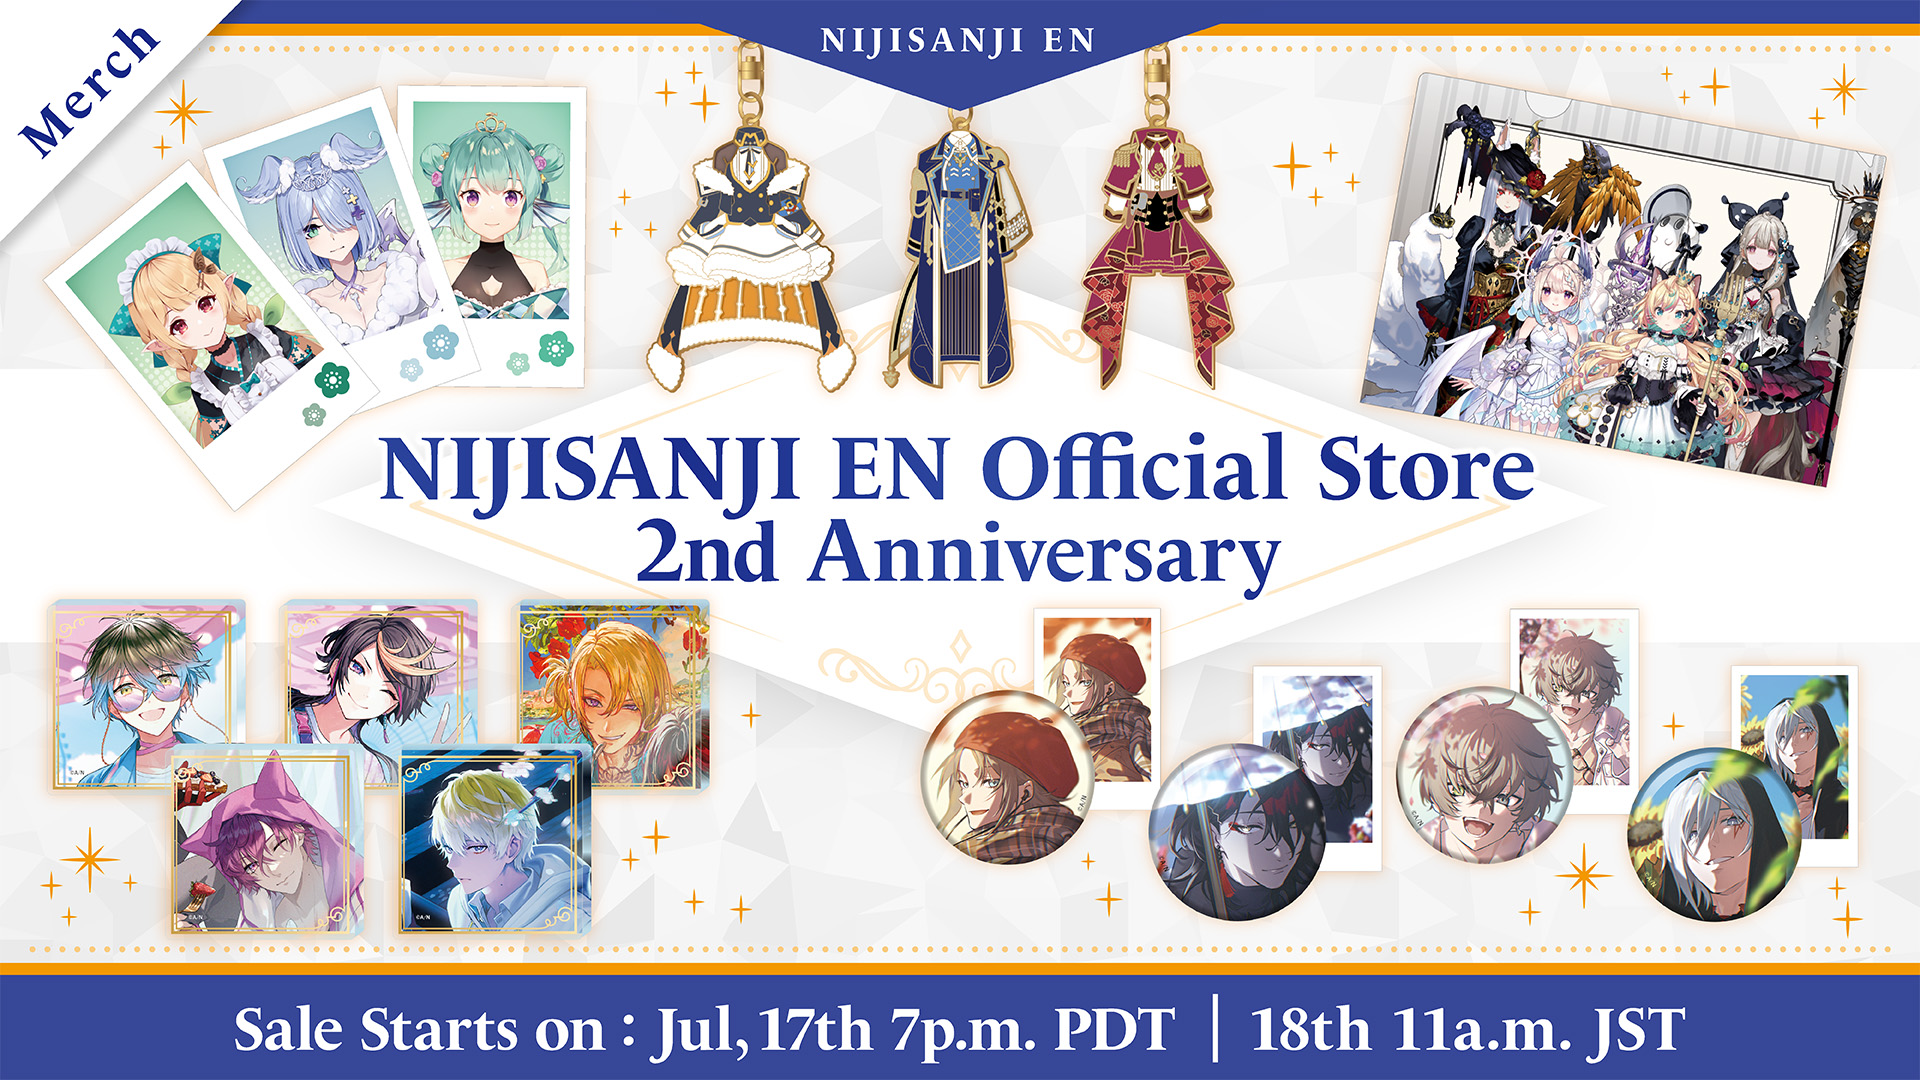 NIJISANJI EN announces “NIJISANJI EN Official Store 2nd 